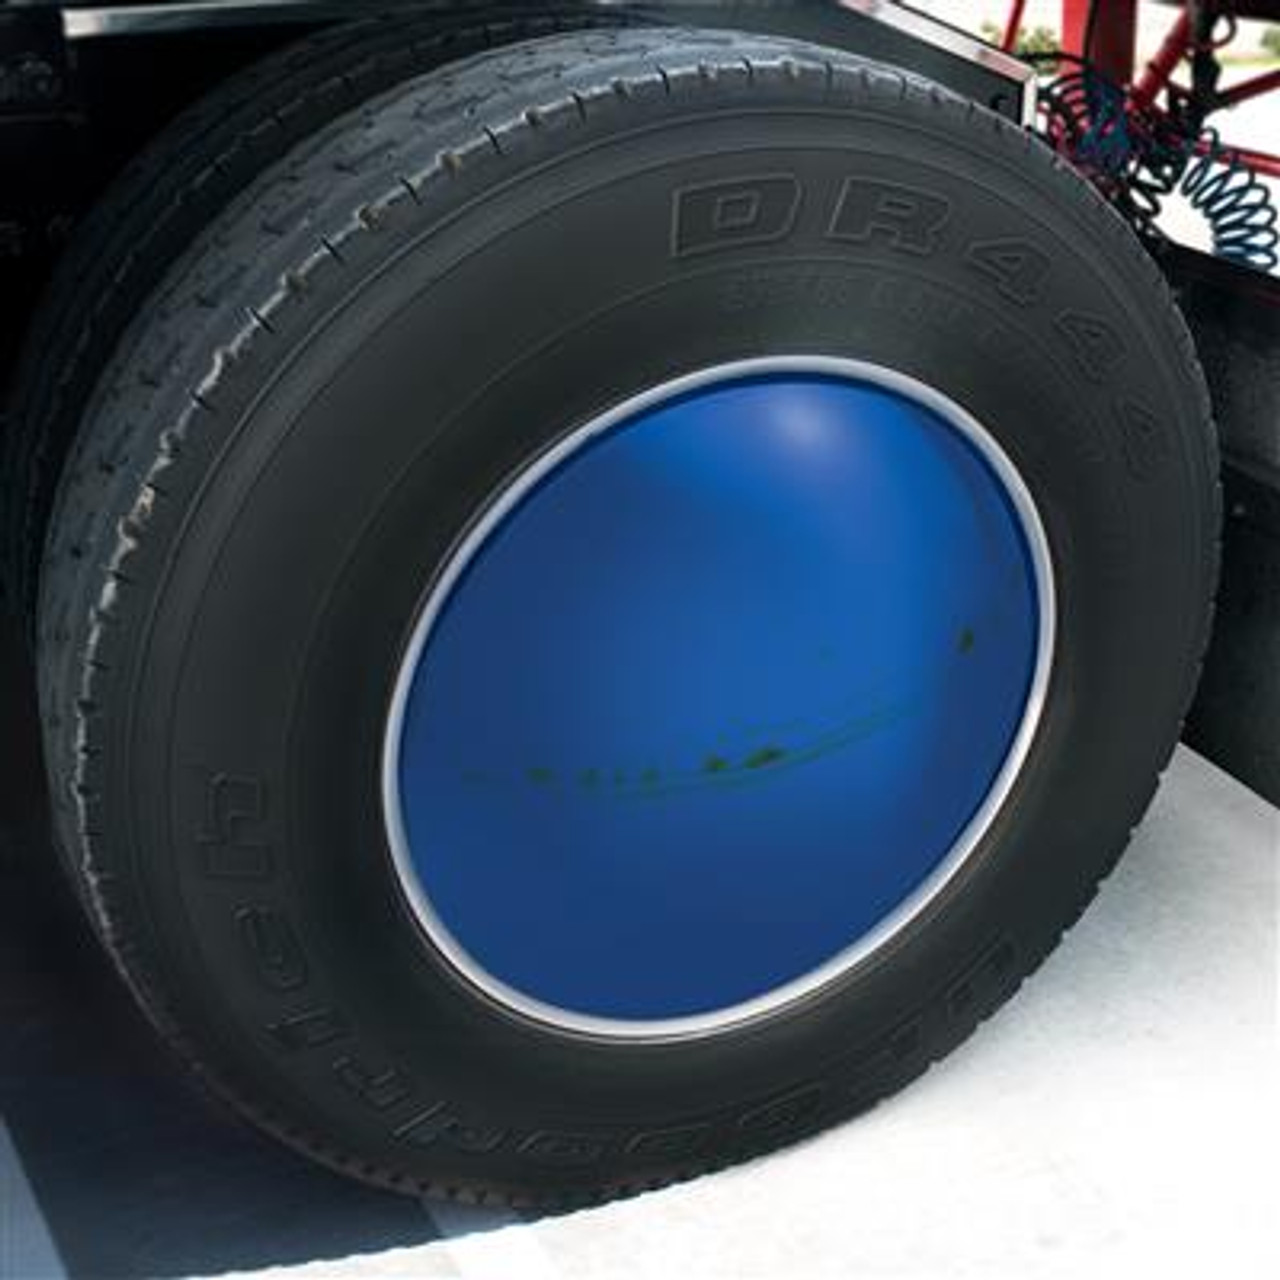 Aero Full-Moon Rear Axle Cover Kit - Indigo Blue